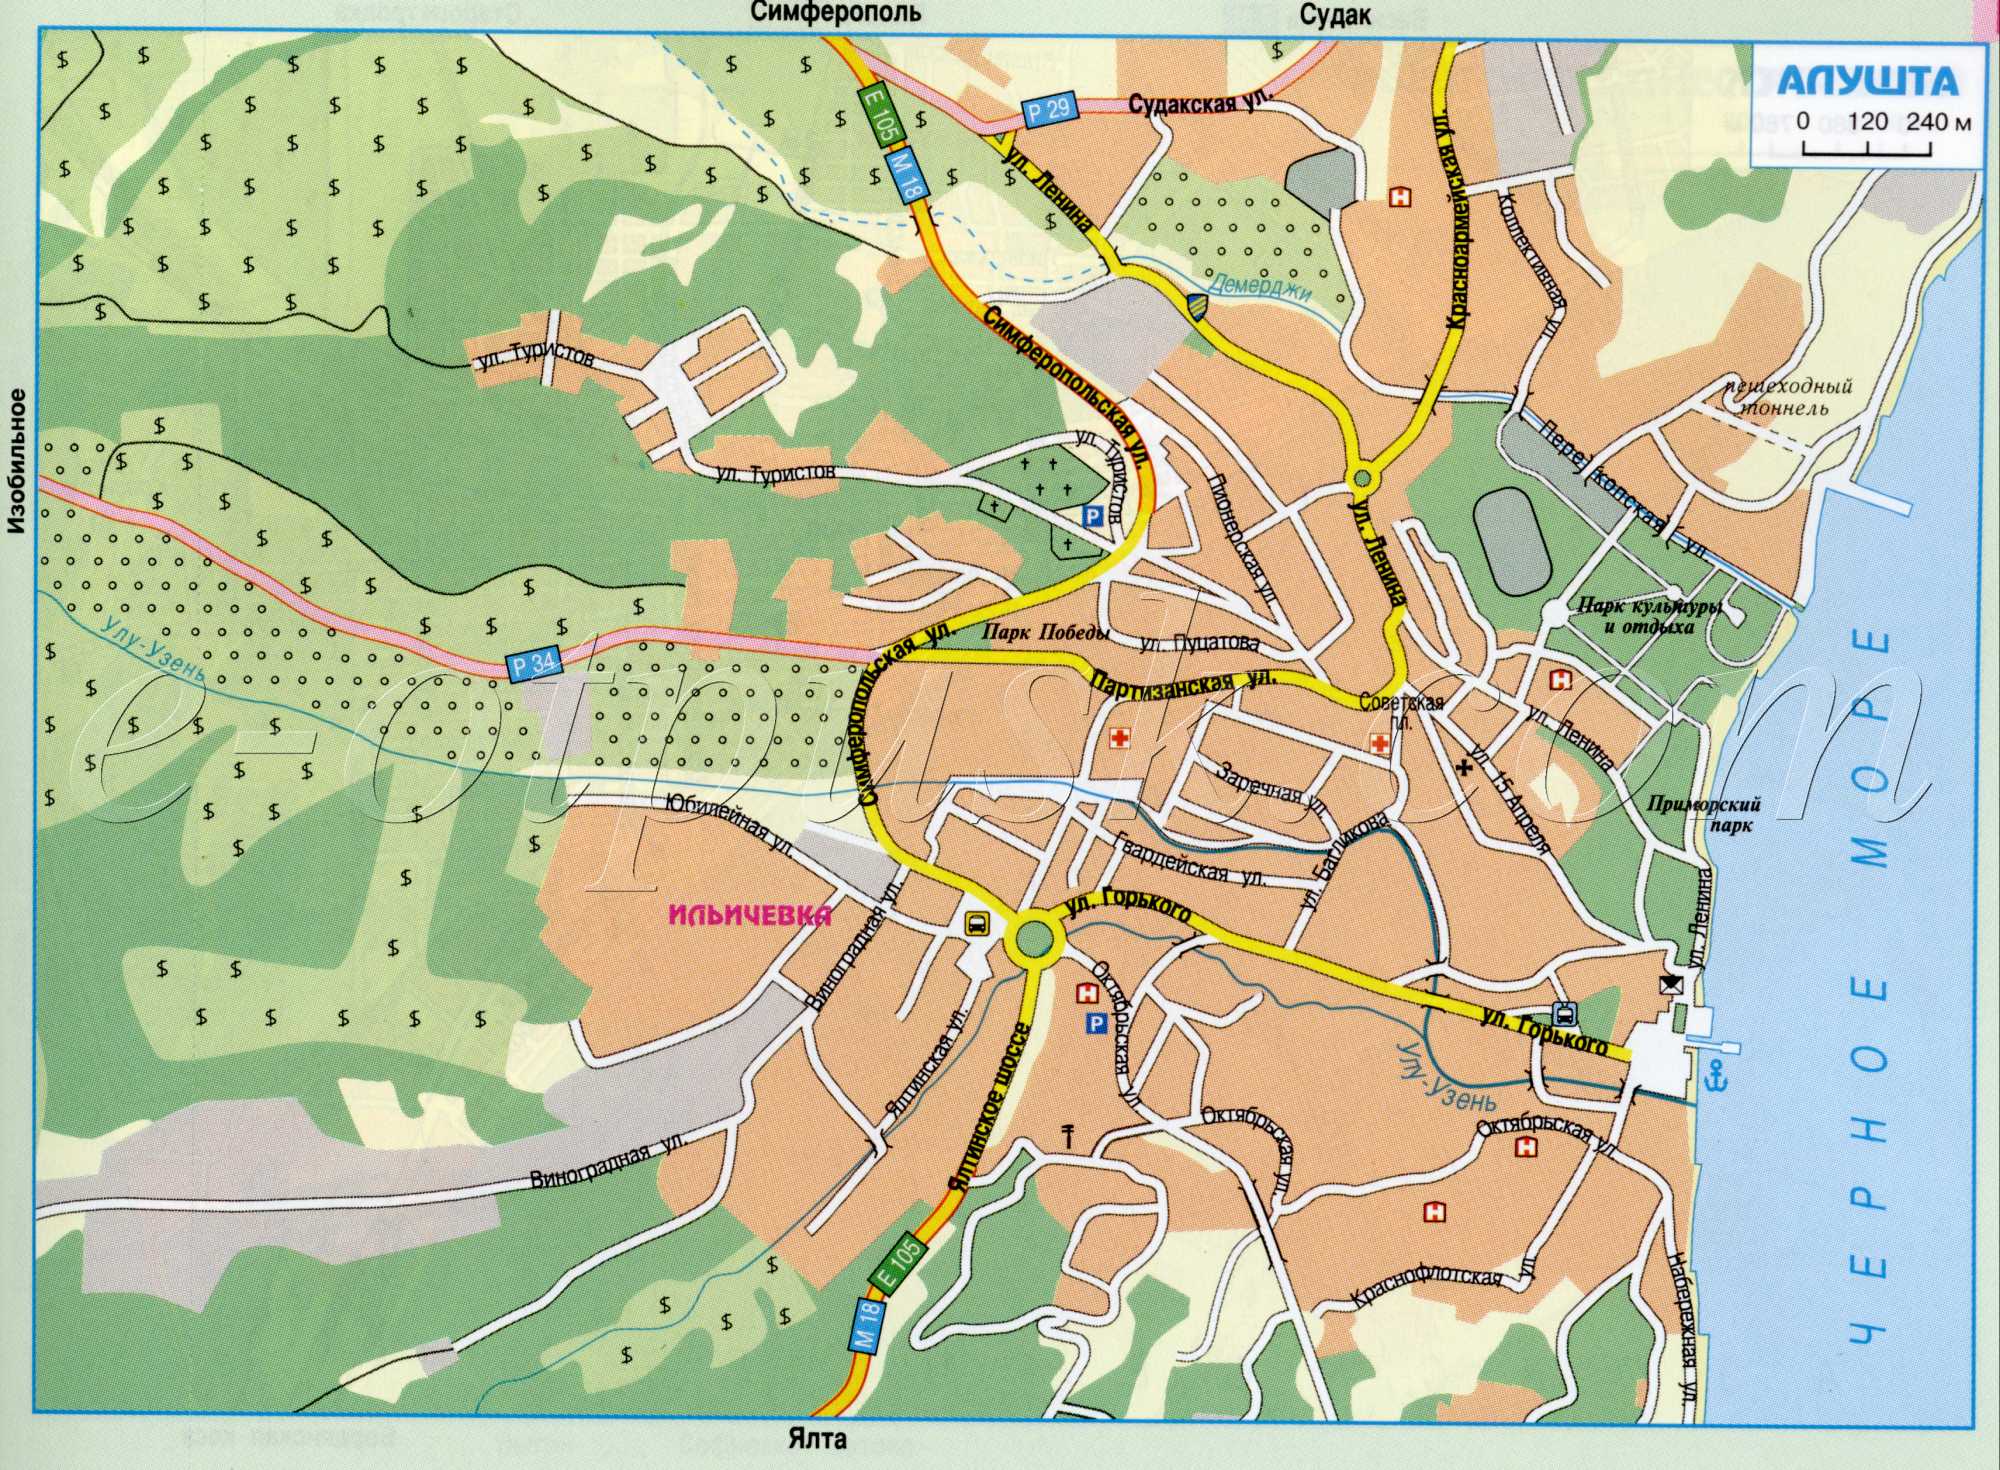 Карта Алушты. Карта авто дорог города Алушта, Крым. скачать бесплатно